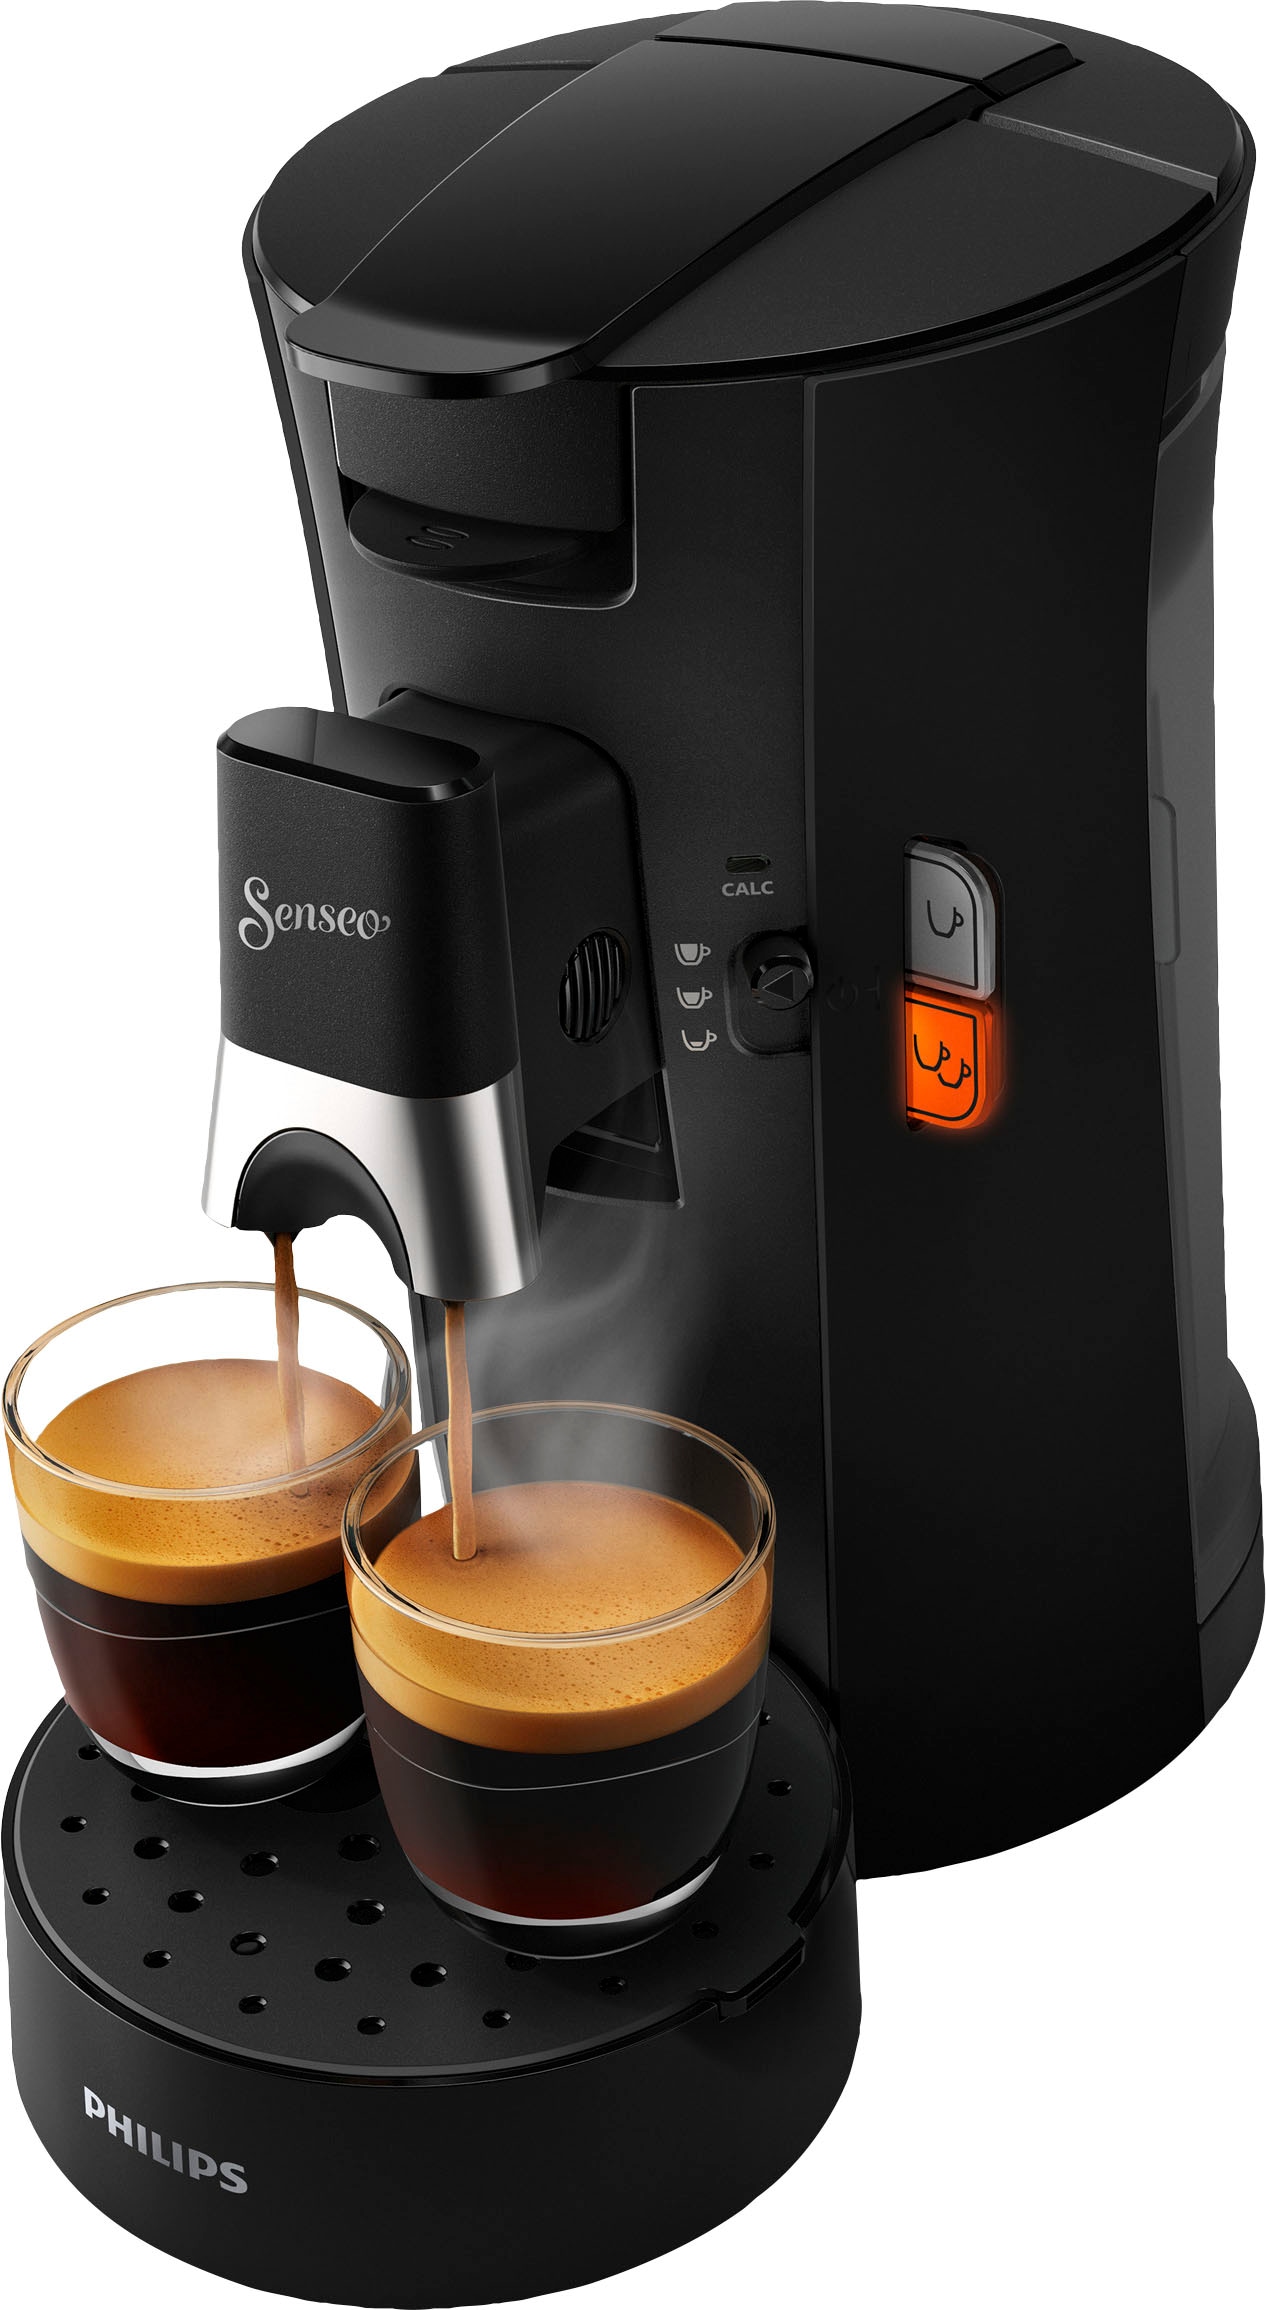 Philips Senseo Kaffeepadmaschine »Select CSA230/69, aus 21% recyceltem  Plastik, +3 Kaffeespezialitäten«, und Crema Plus, 100 Senseo Pads kaufen  und bis zu 33 € zurückerhalten bestellen